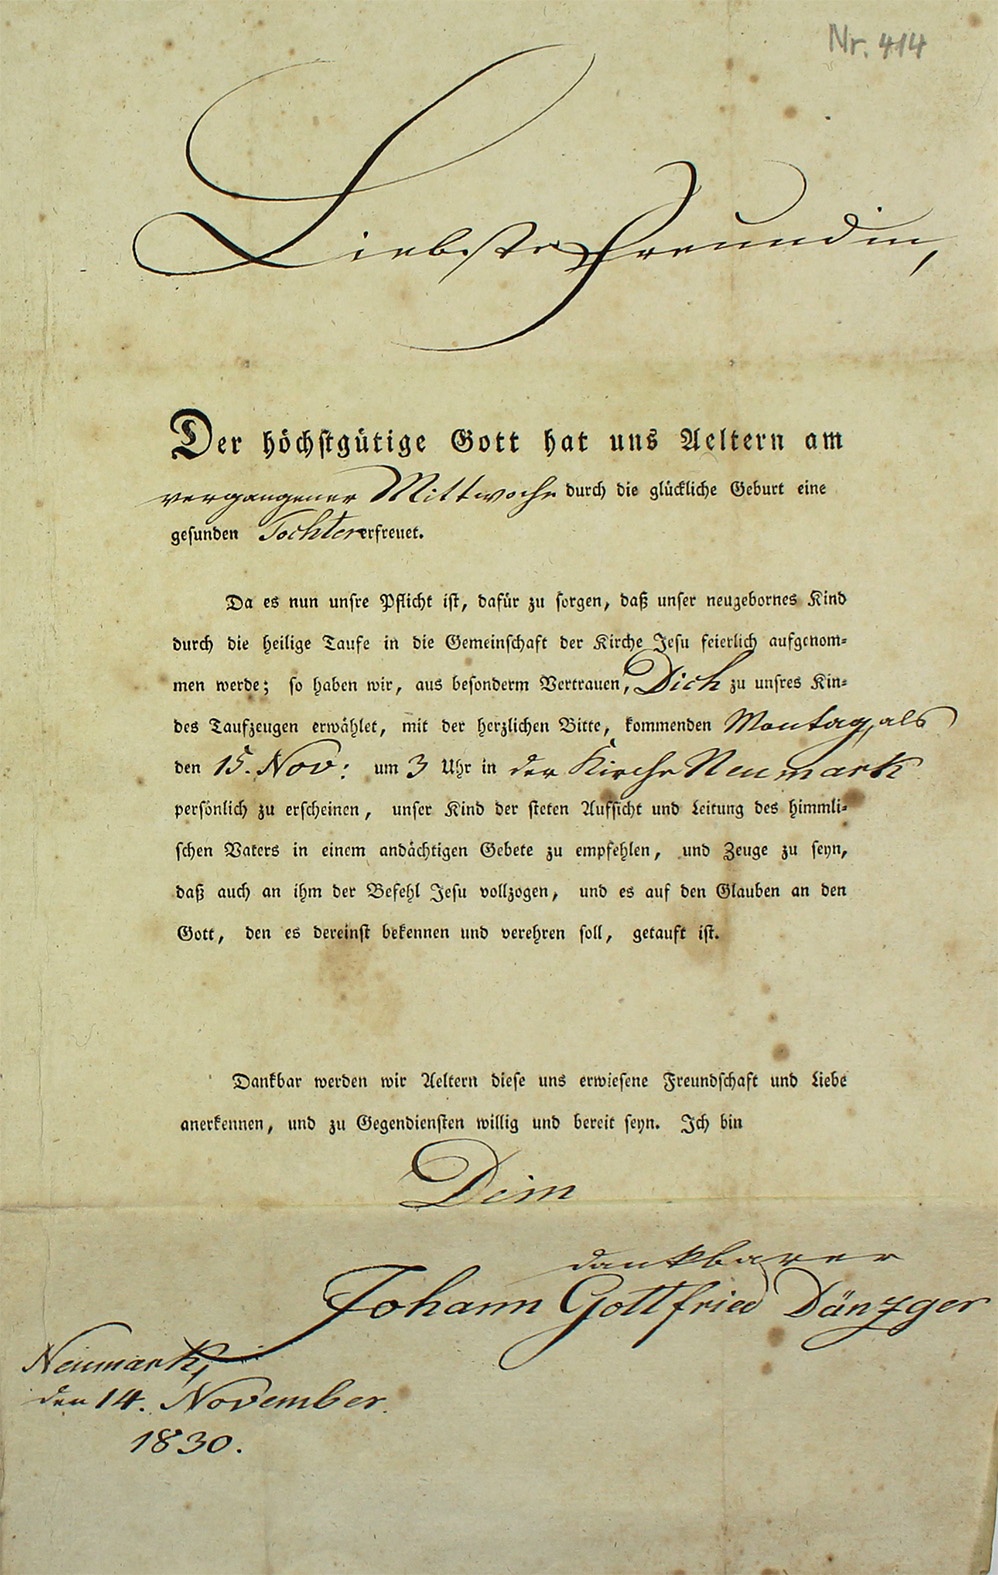 Einladung zur Taufe der Tochter von Johann Gottfried Dänzger an Christiane Hartmann , 1830 (Museum Wolmirstedt RR-F)